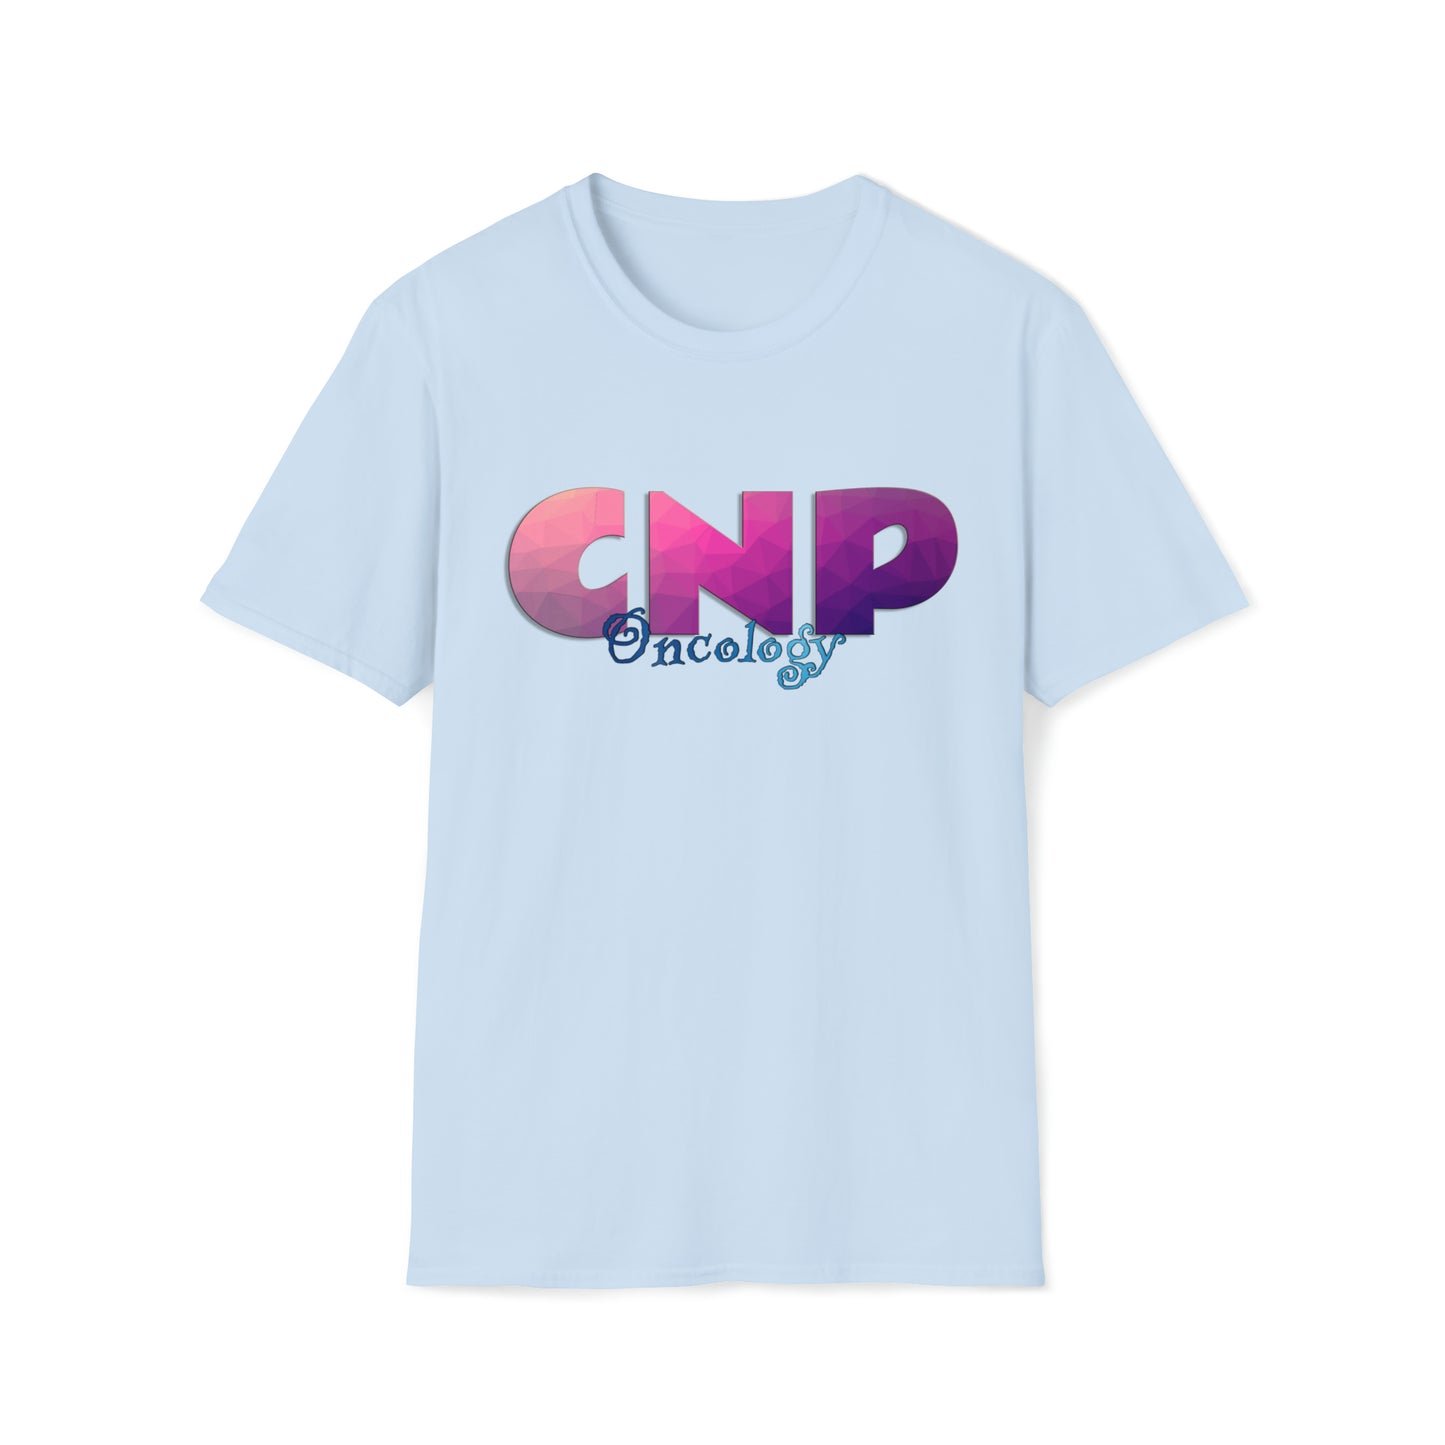 Oncology Nurse Practitioner, Nurse Practitioner Gift, Nurse Practitioner Preceptor Gift, Unisex Softstyle T-Shirt